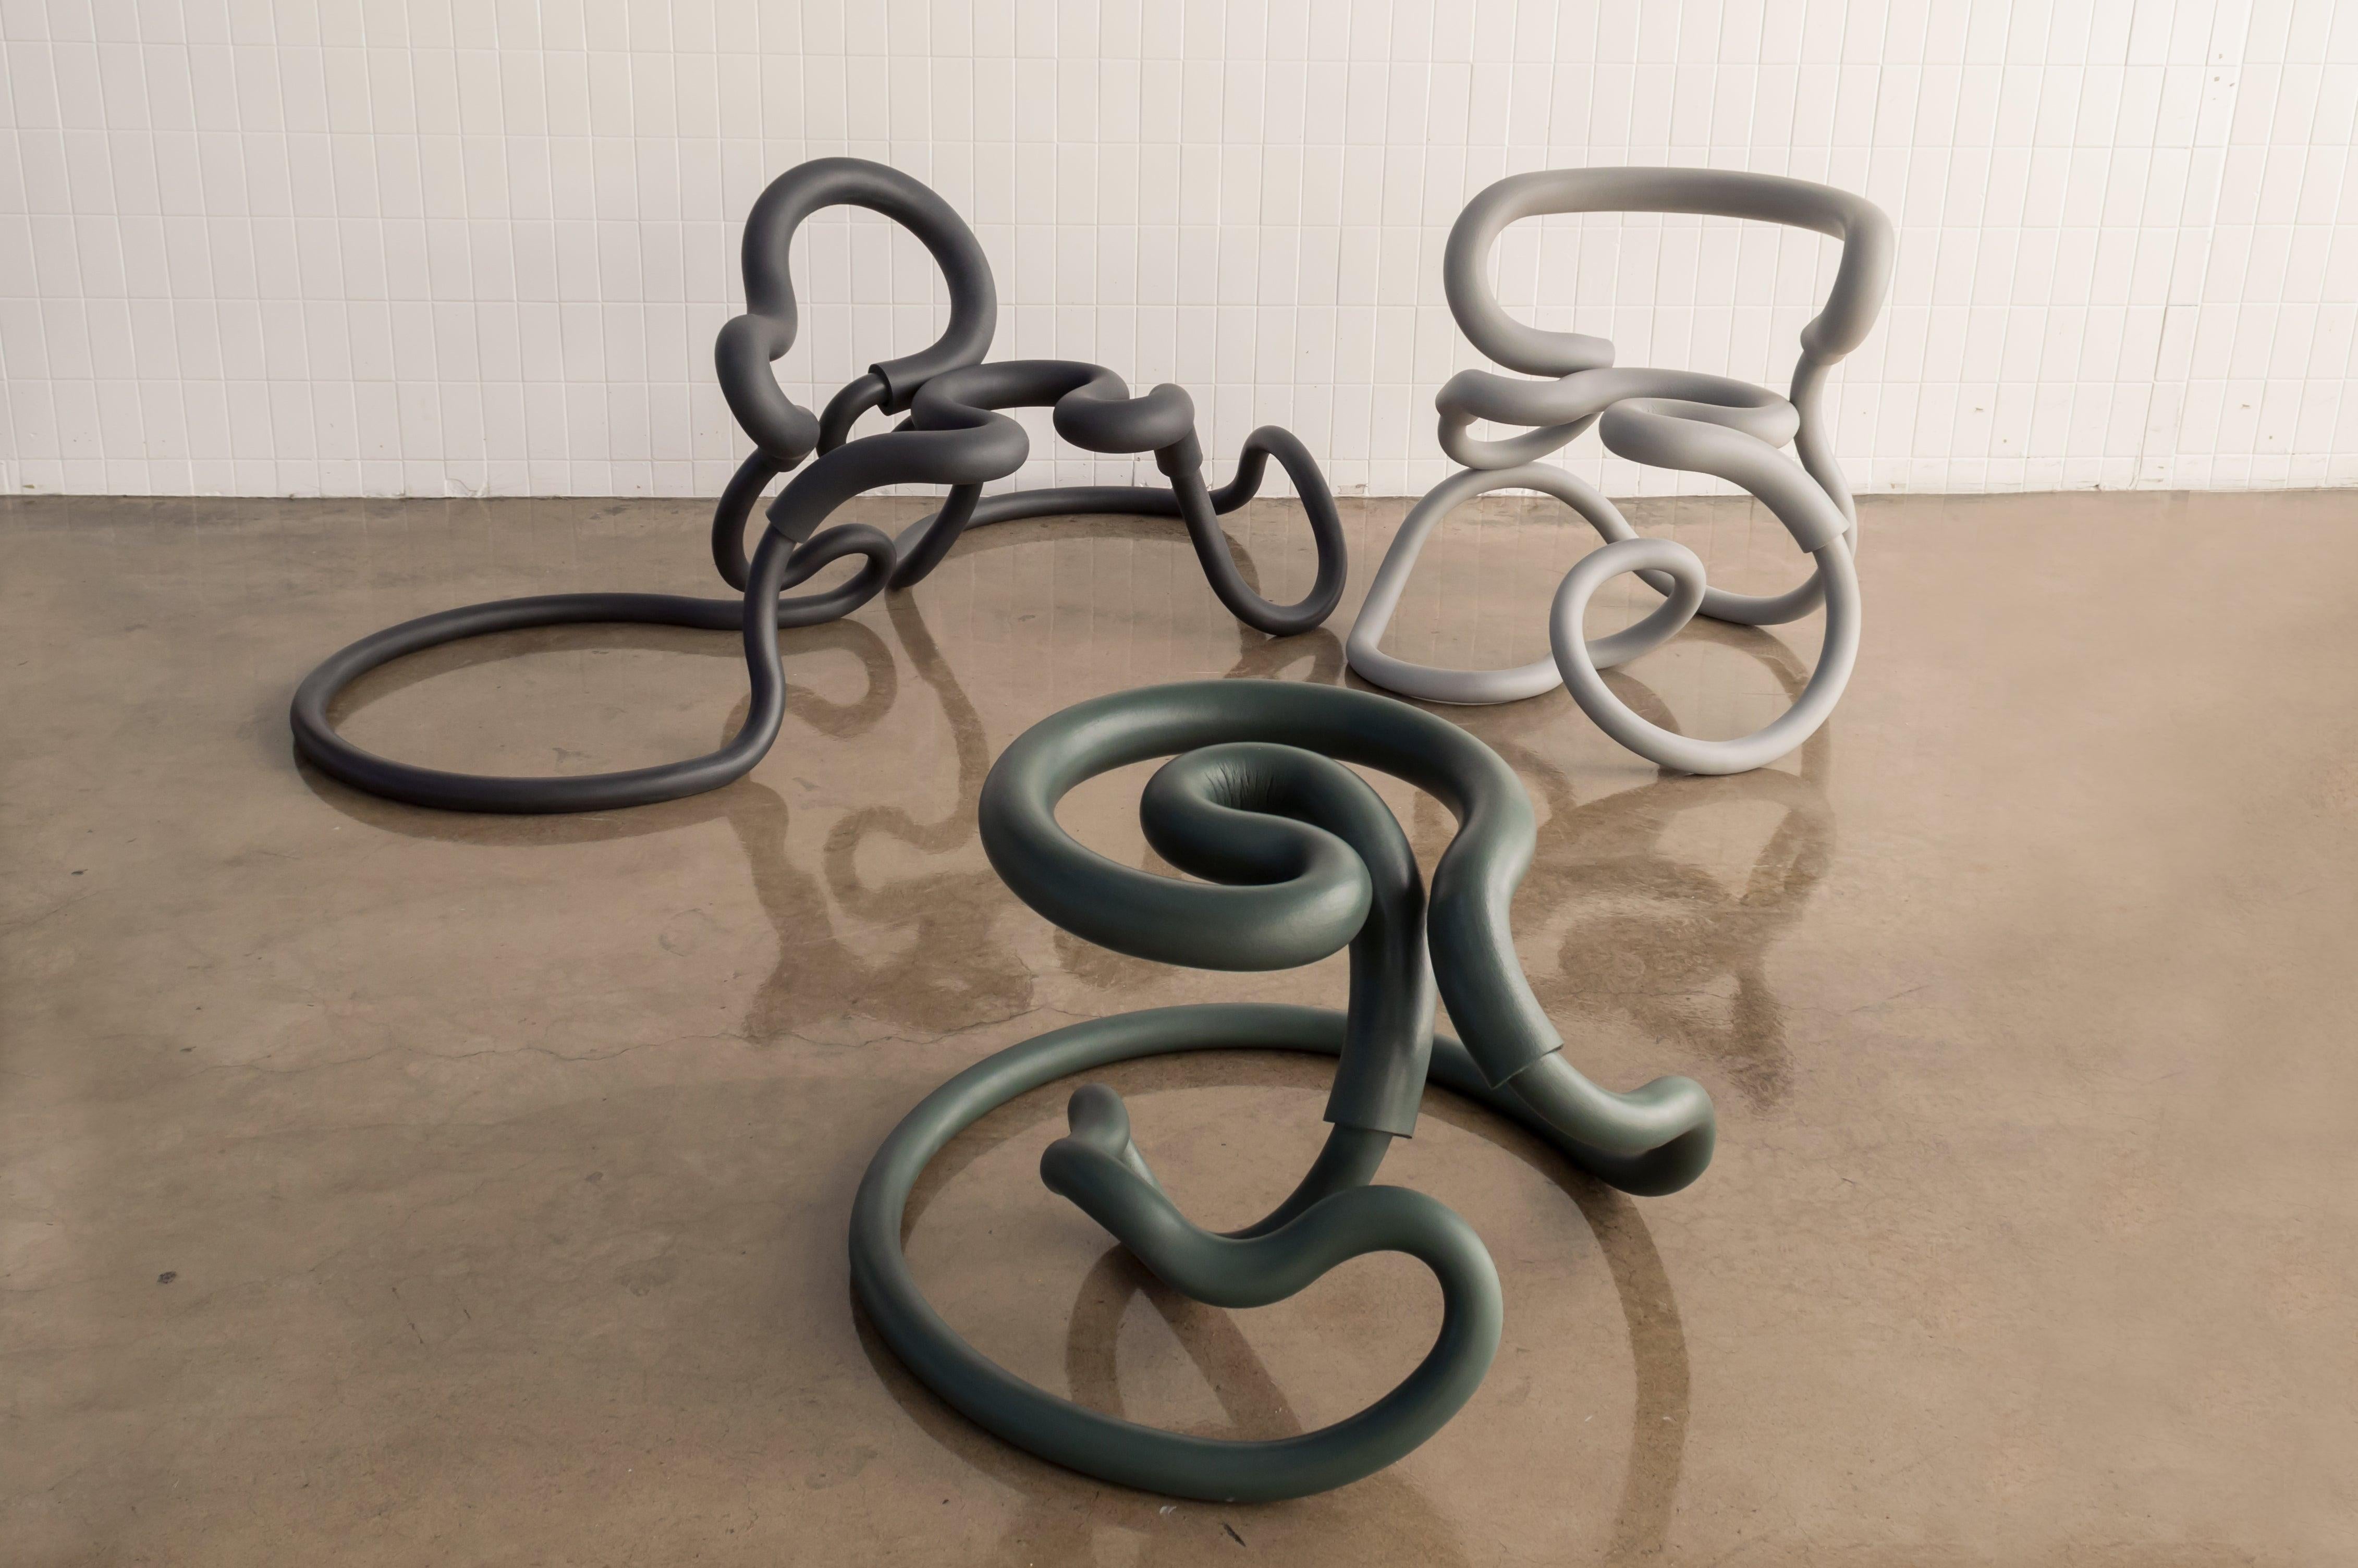 Aranda\Lasch continue d'explorer et de tester différentes formes de meubles à partir de sa dernière série Railing, une série de pièces design qui utilisent des tubes pliés et garnis de cuir de mousse à l'extérieur. La chaise de balustrade (R1 et R2)